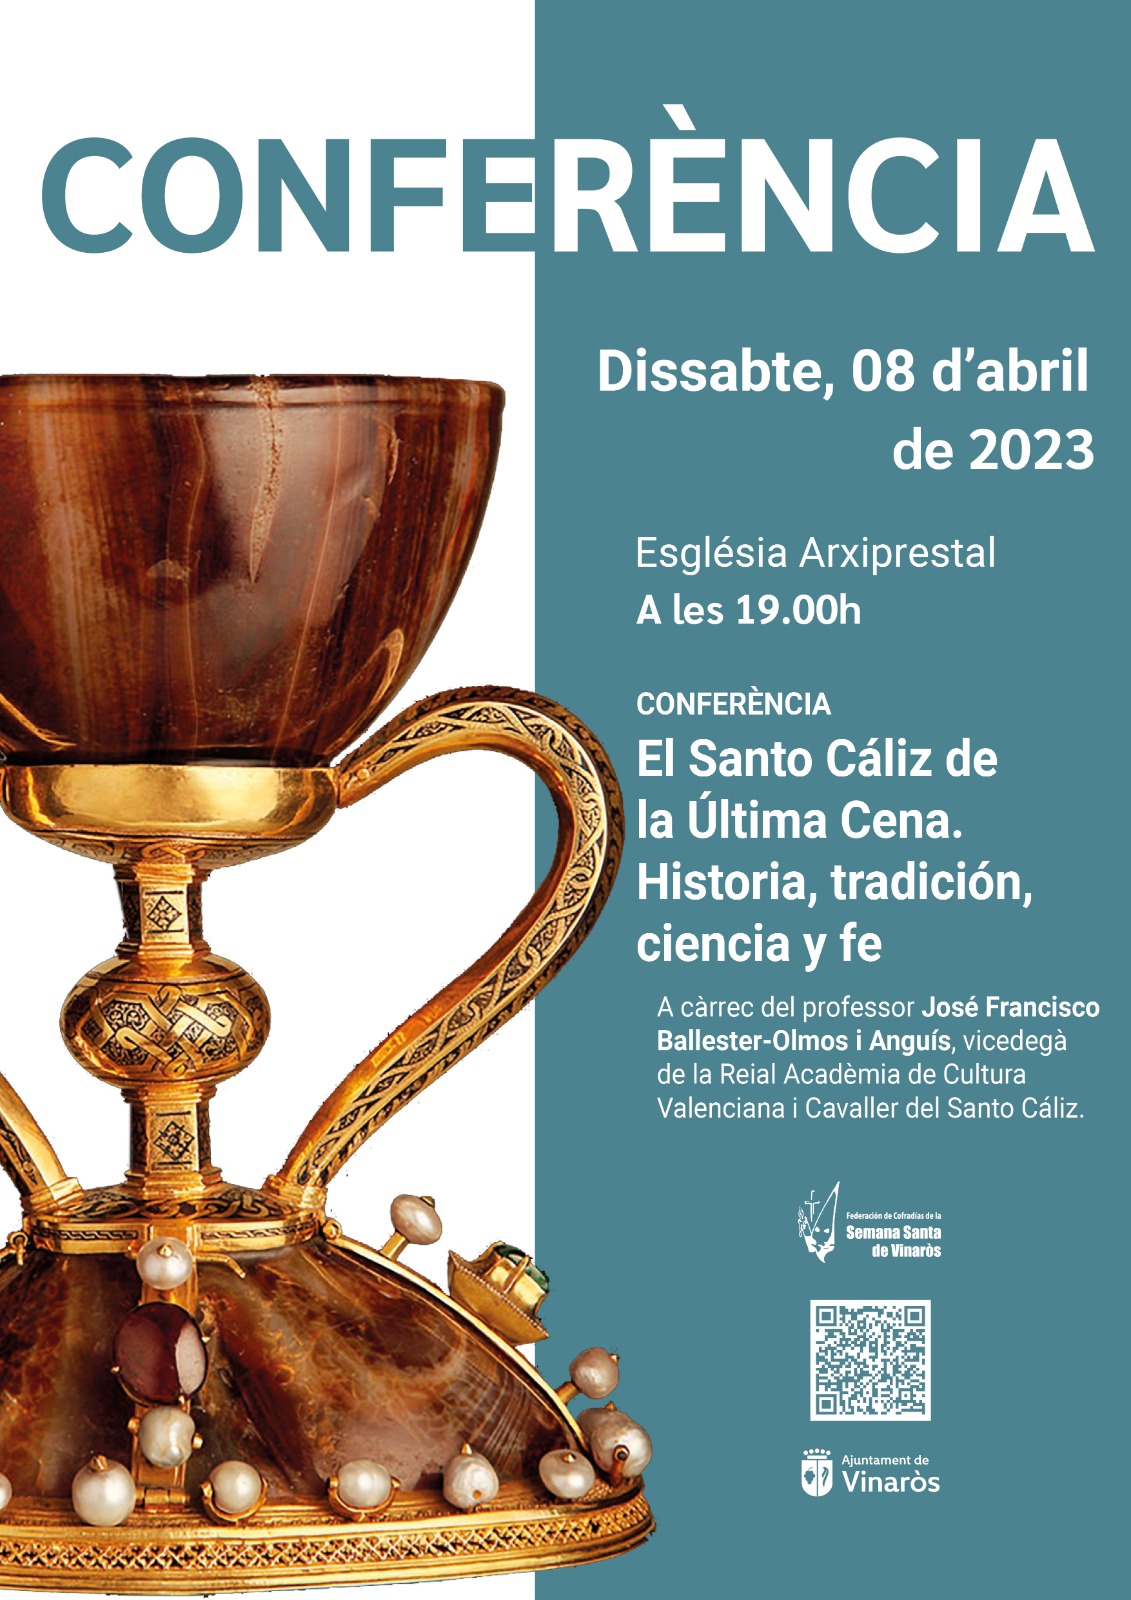 Conferencia: El Santo Cáliz de la última cena - Vinaròs 2023